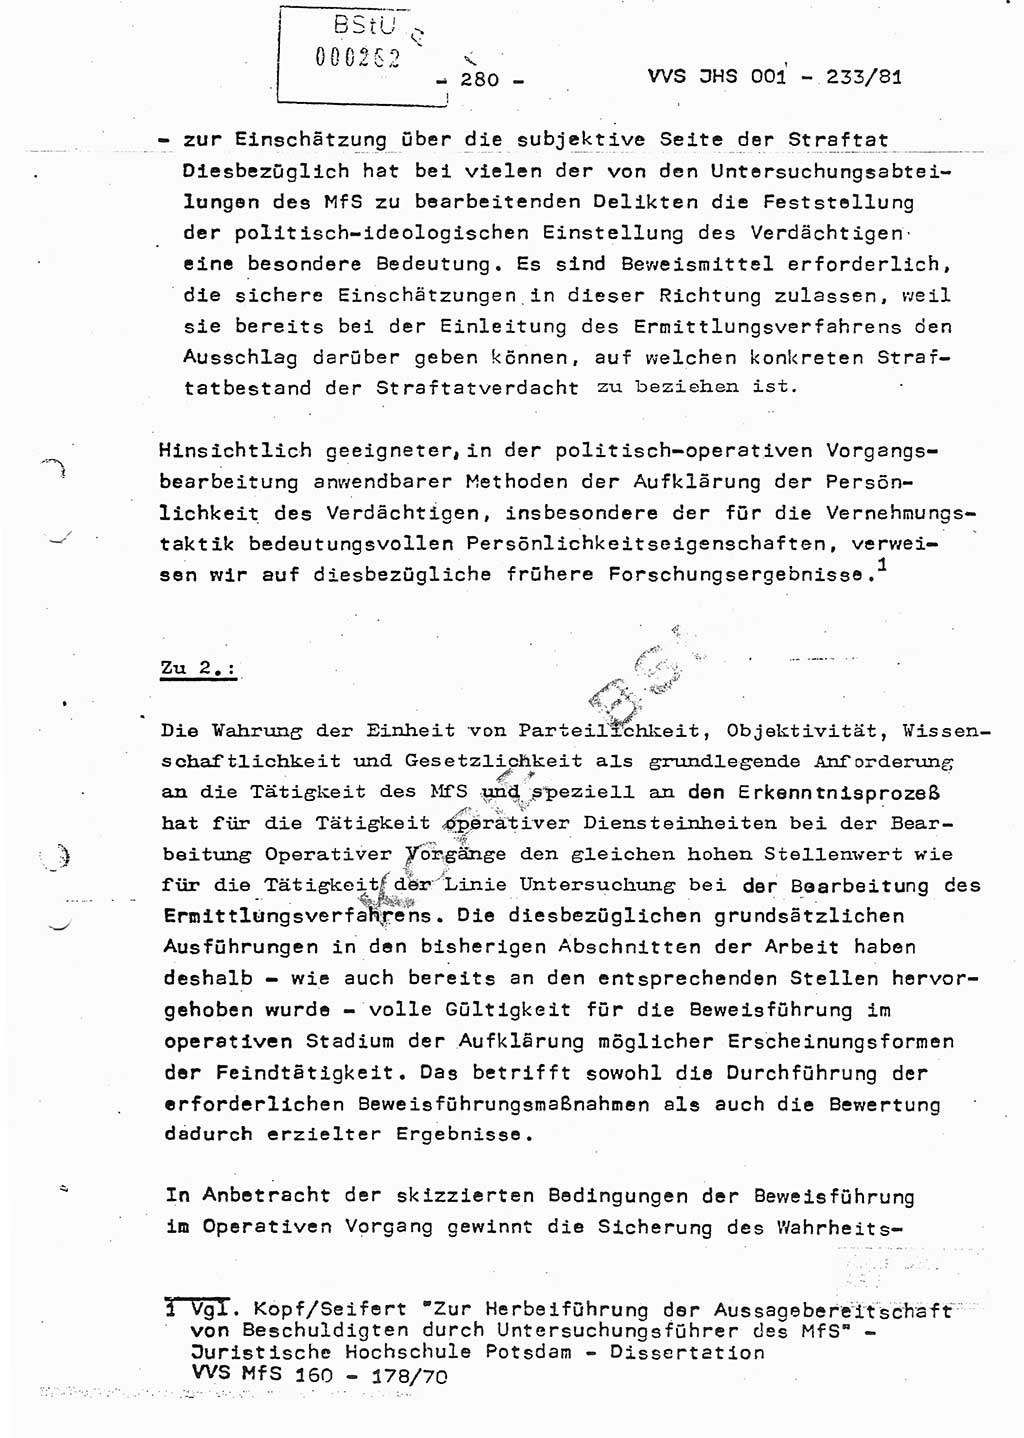 Dissertation Oberstleutnant Horst Zank (JHS), Oberstleutnant Dr. Karl-Heinz Knoblauch (JHS), Oberstleutnant Gustav-Adolf Kowalewski (HA Ⅸ), Oberstleutnant Wolfgang Plötner (HA Ⅸ), Ministerium für Staatssicherheit (MfS) [Deutsche Demokratische Republik (DDR)], Juristische Hochschule (JHS), Vertrauliche Verschlußsache (VVS) o001-233/81, Potsdam 1981, Blatt 280 (Diss. MfS DDR JHS VVS o001-233/81 1981, Bl. 280)